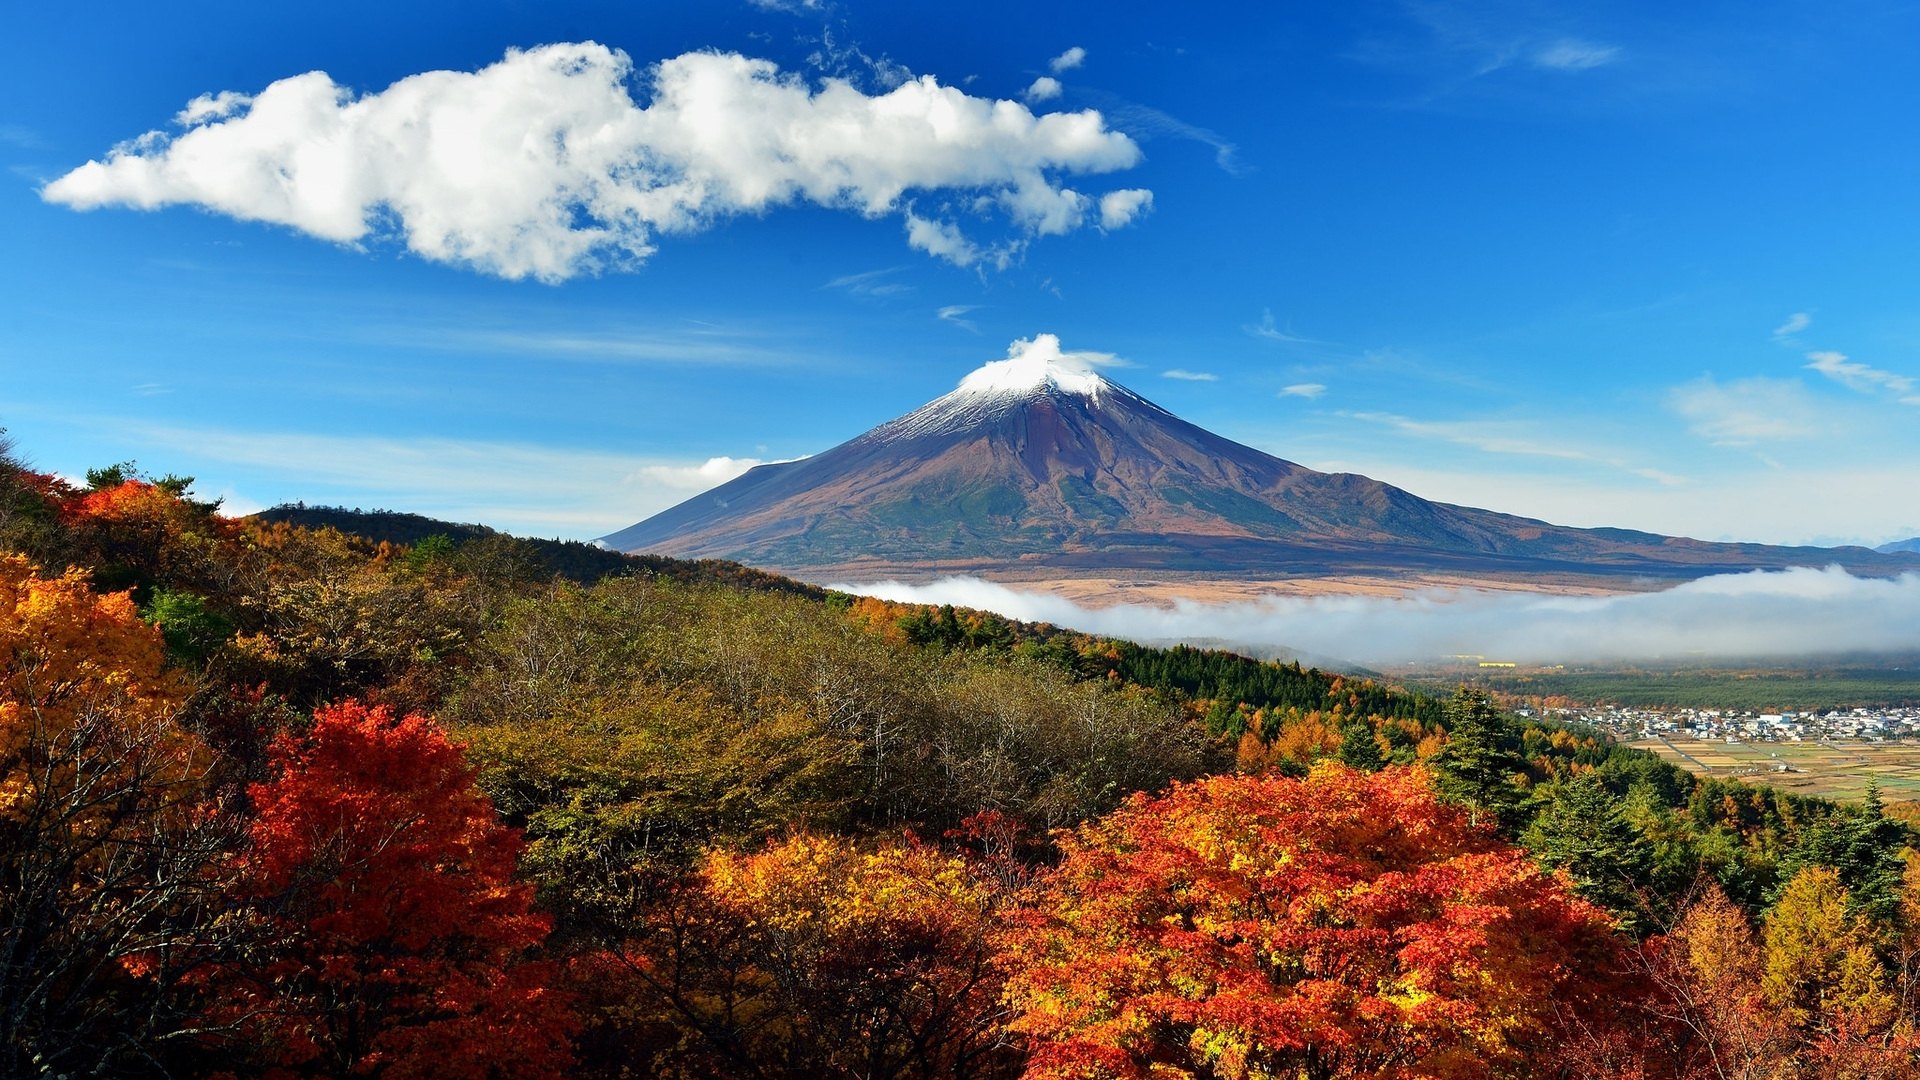 全球最美的世界遗产,却是一座危险的活火山